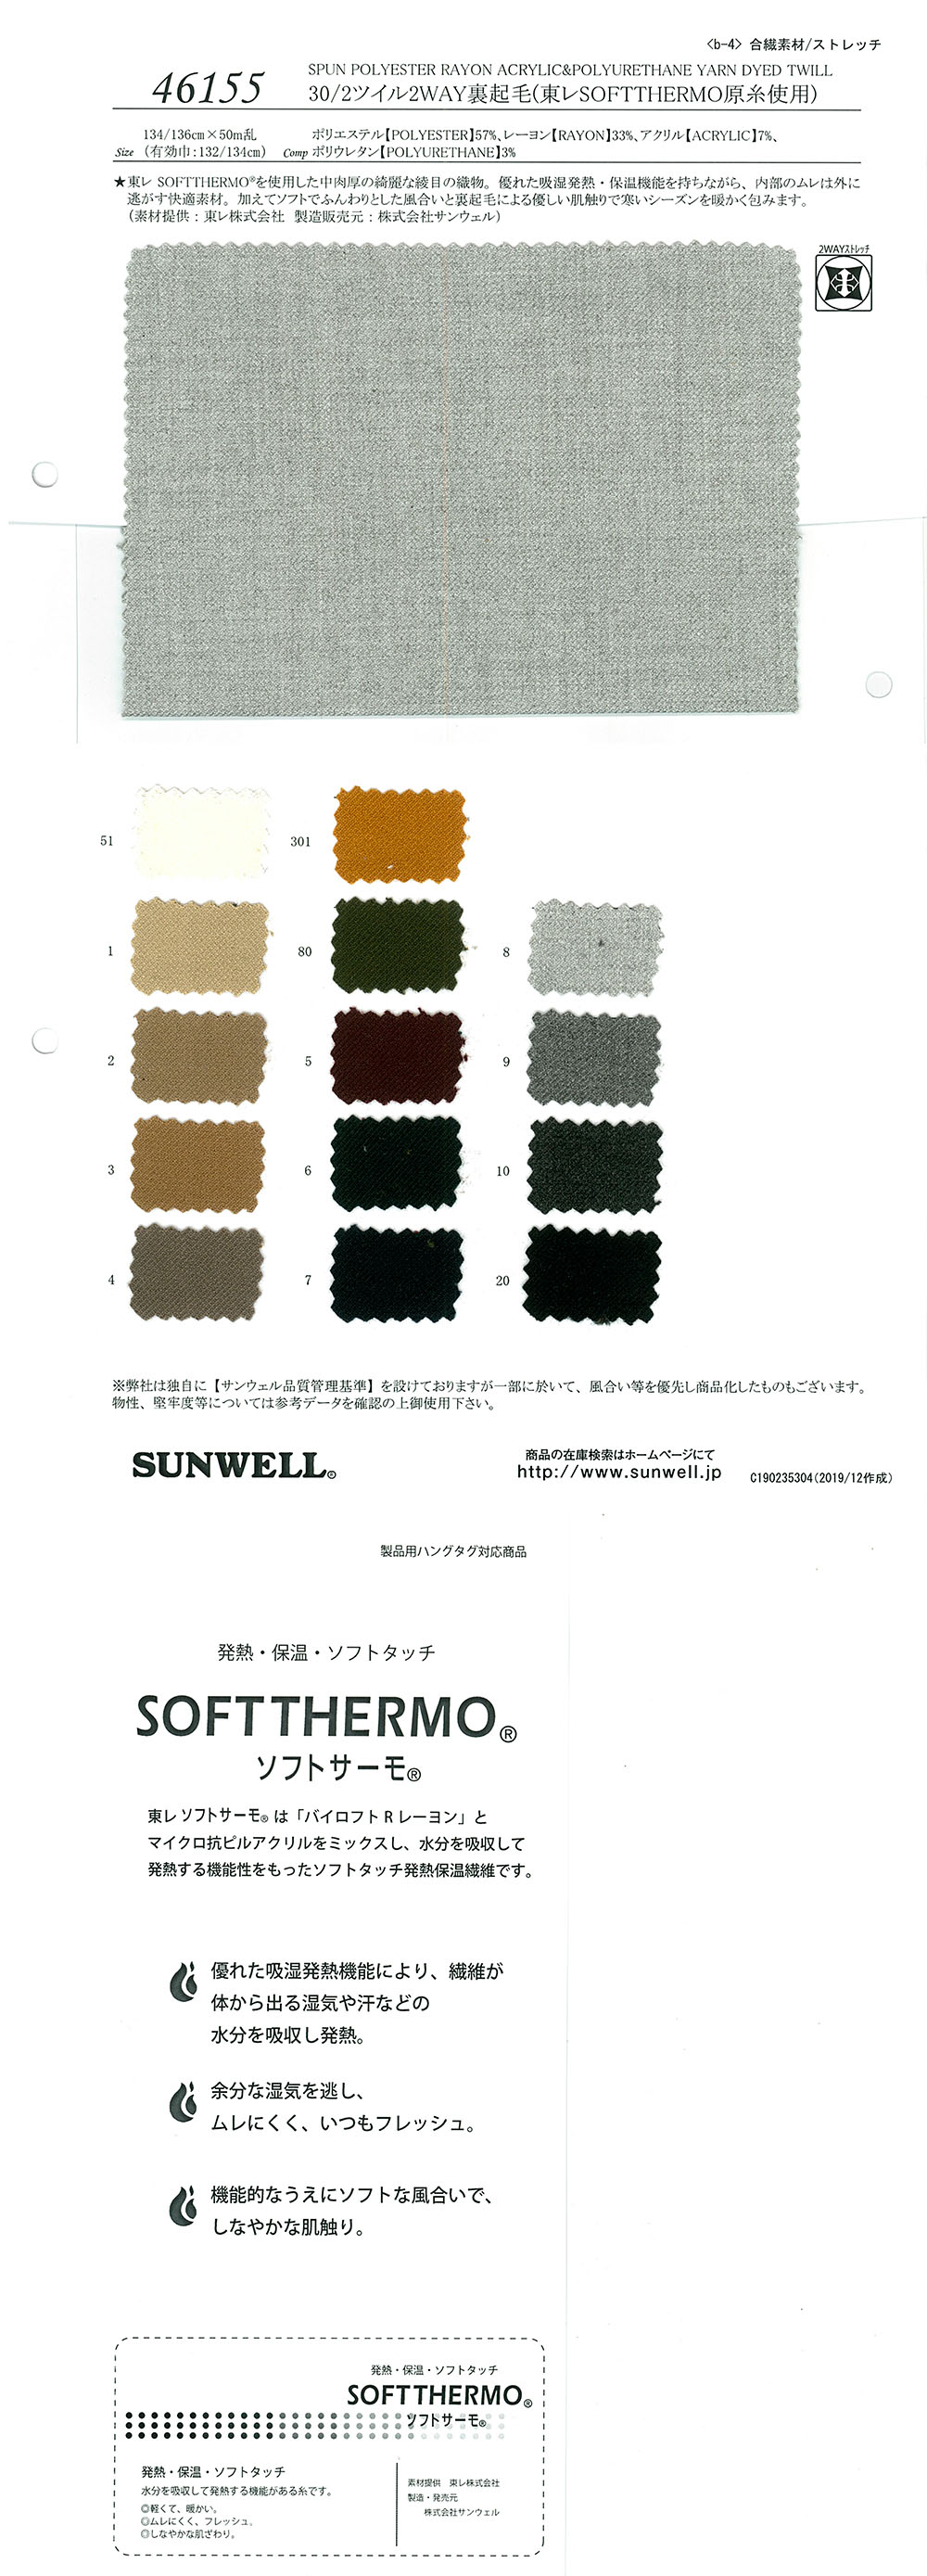 46155 Forro Difuso Bidireccional De Sarga 30/2 (Con Hilo TORAY )[Fabrica Textil] SUNWELL